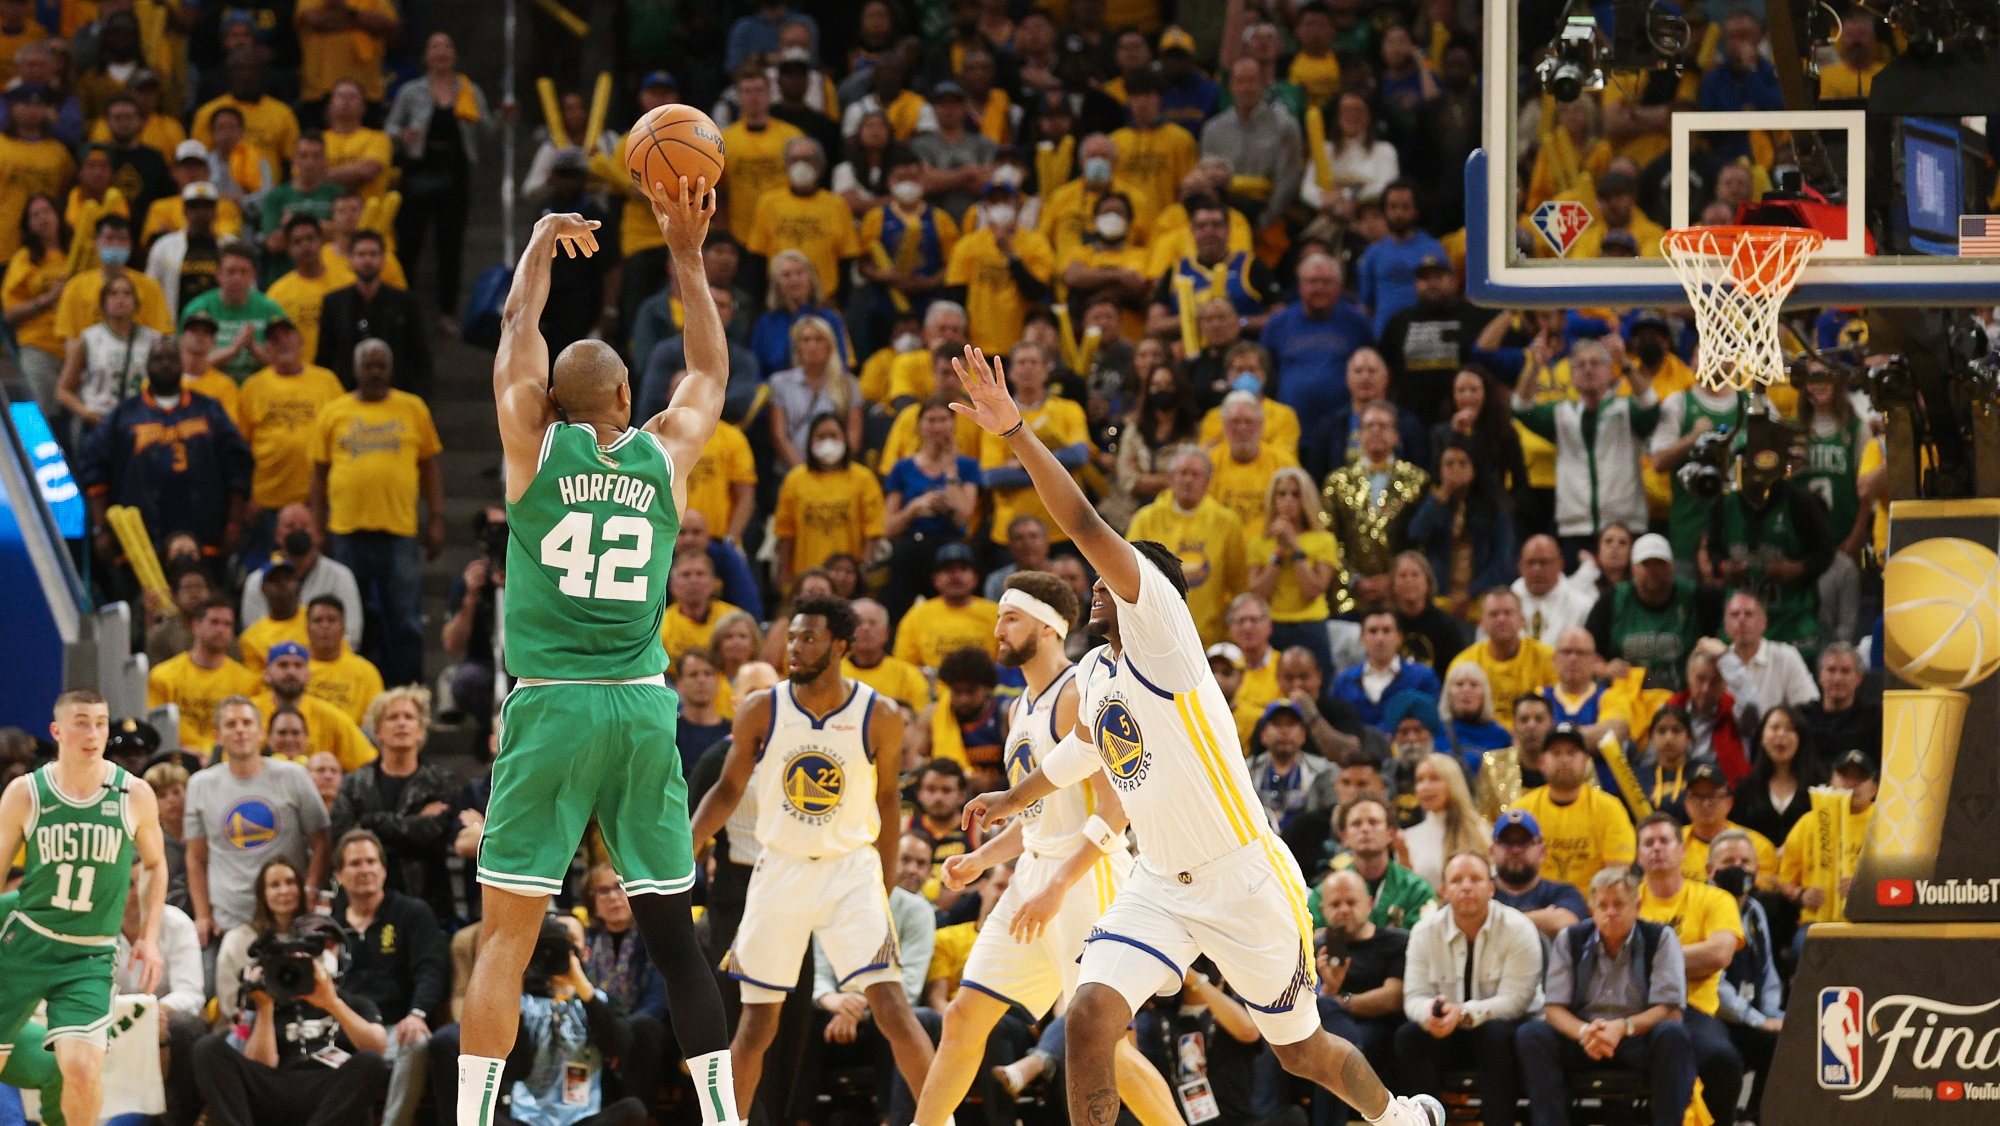 Celtics perdiam por 12 pontos no final do terceiro período mas começaram o último quarto com sete triplos concretizados seguidos